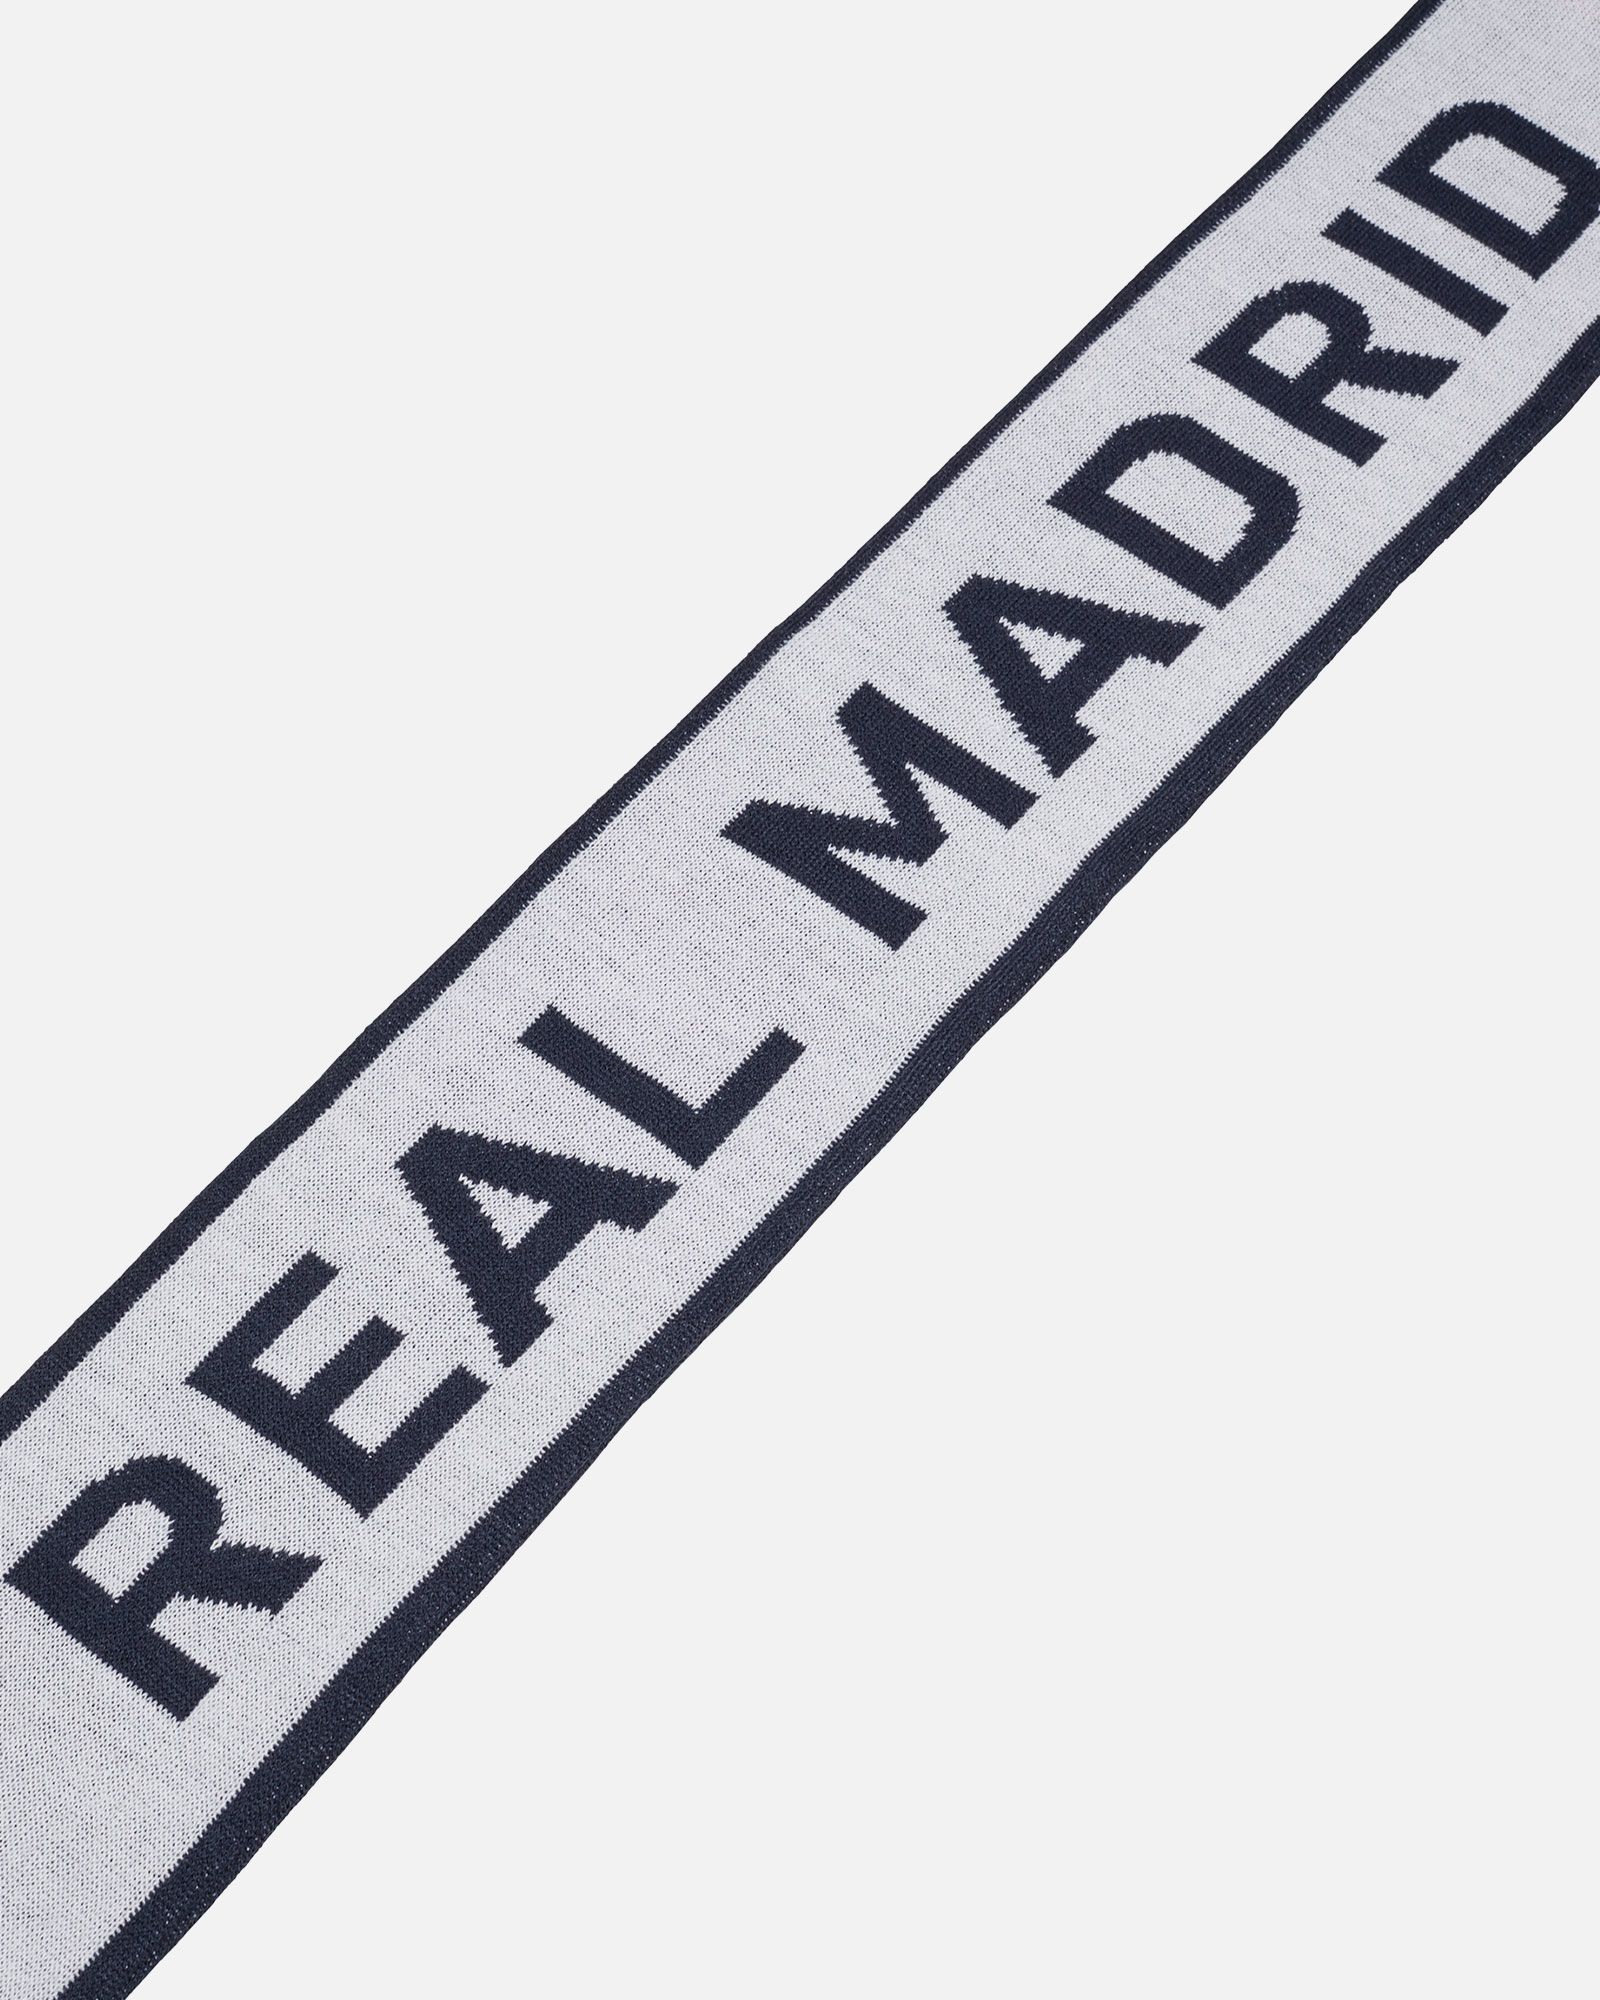 Bufanda Real Madrid - Blanco adidas